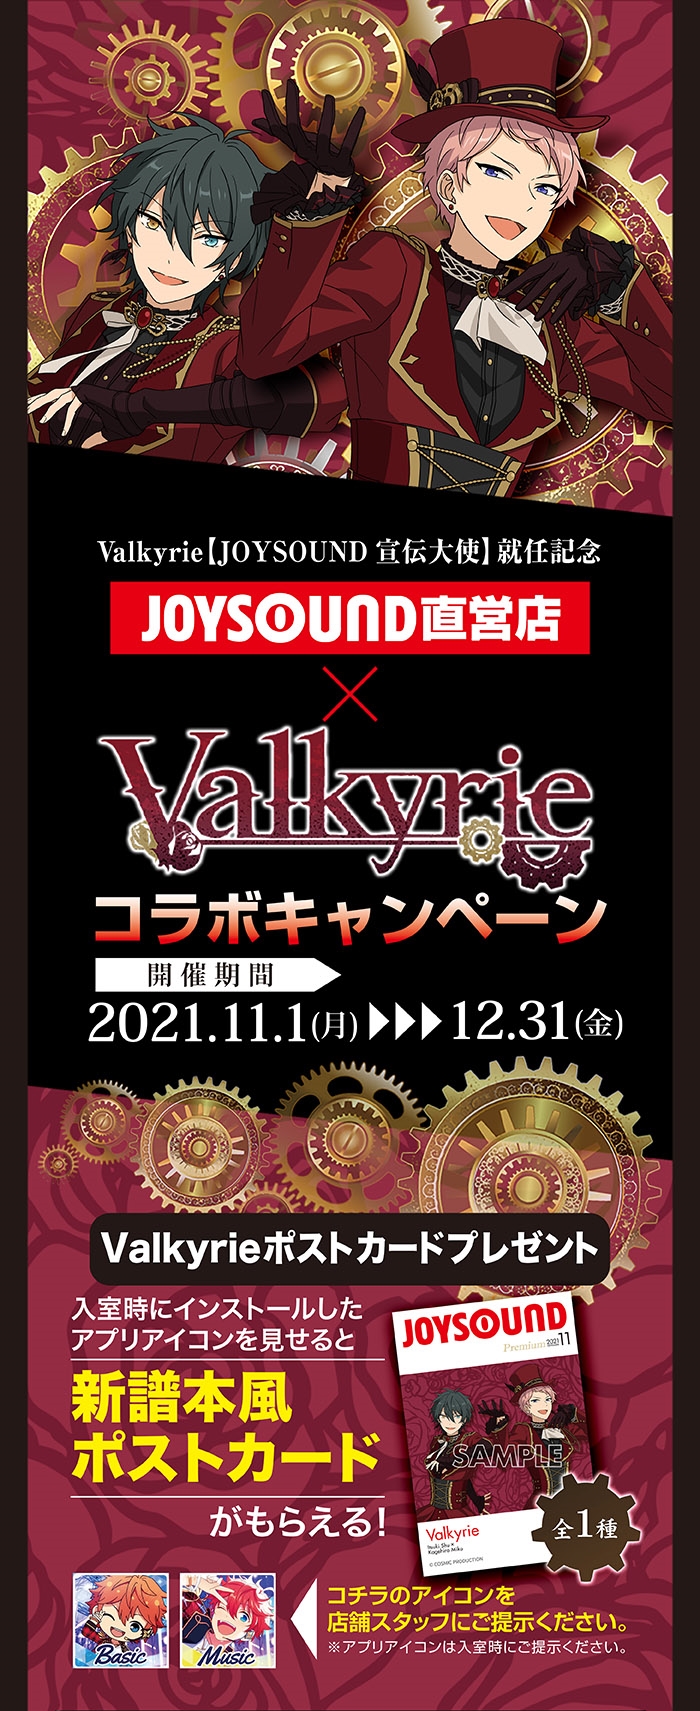 人気アイドルユニット Valkyrie が Joysound宣伝大使就任 カラオケ Joysound直営店 ジョイサウンド ネット予約受付中